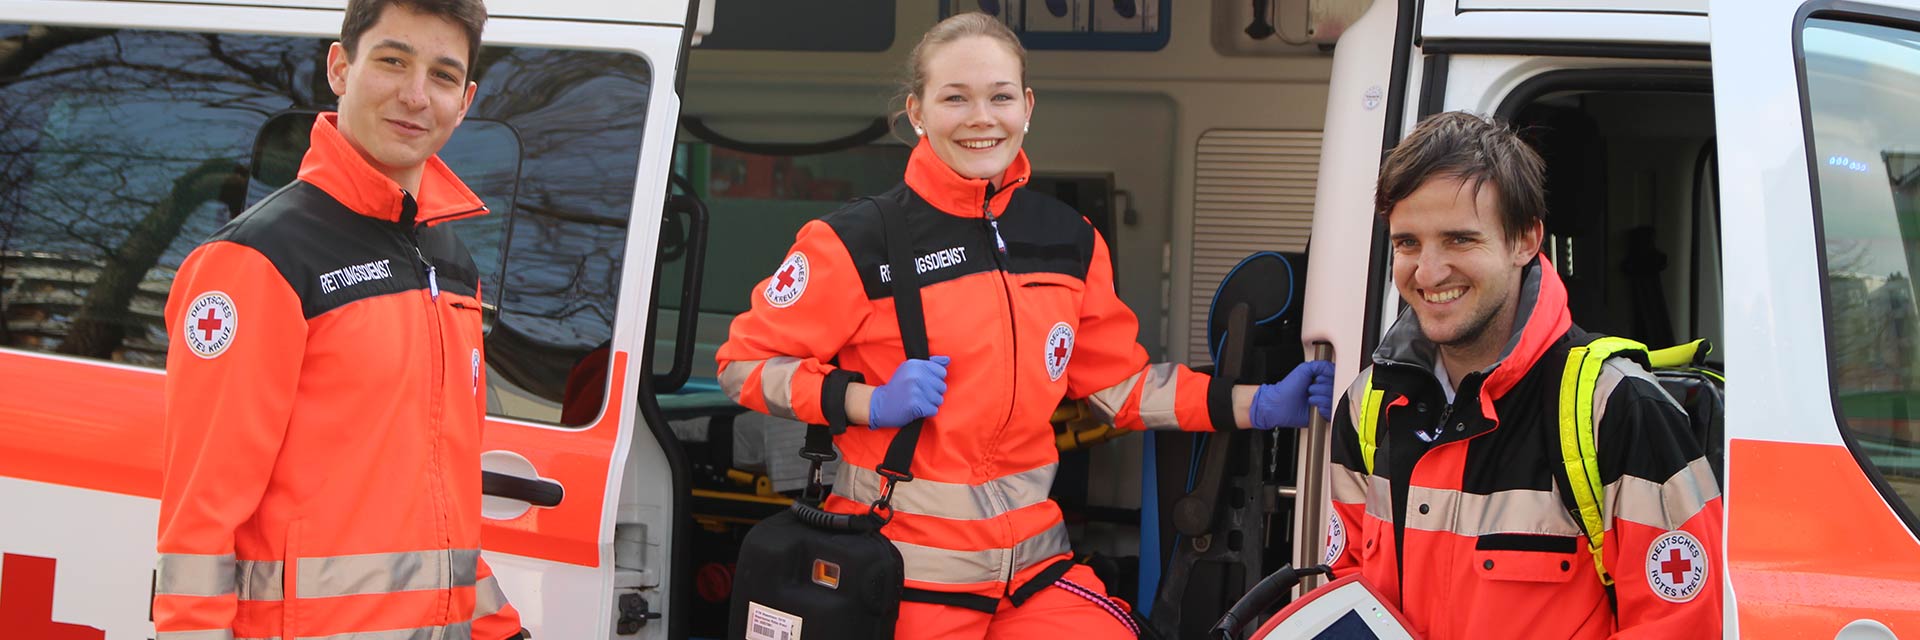 Foto zeigt junge Frau und zwei junge Männer in Rettungsdienstkleidung am Einsatzwagen